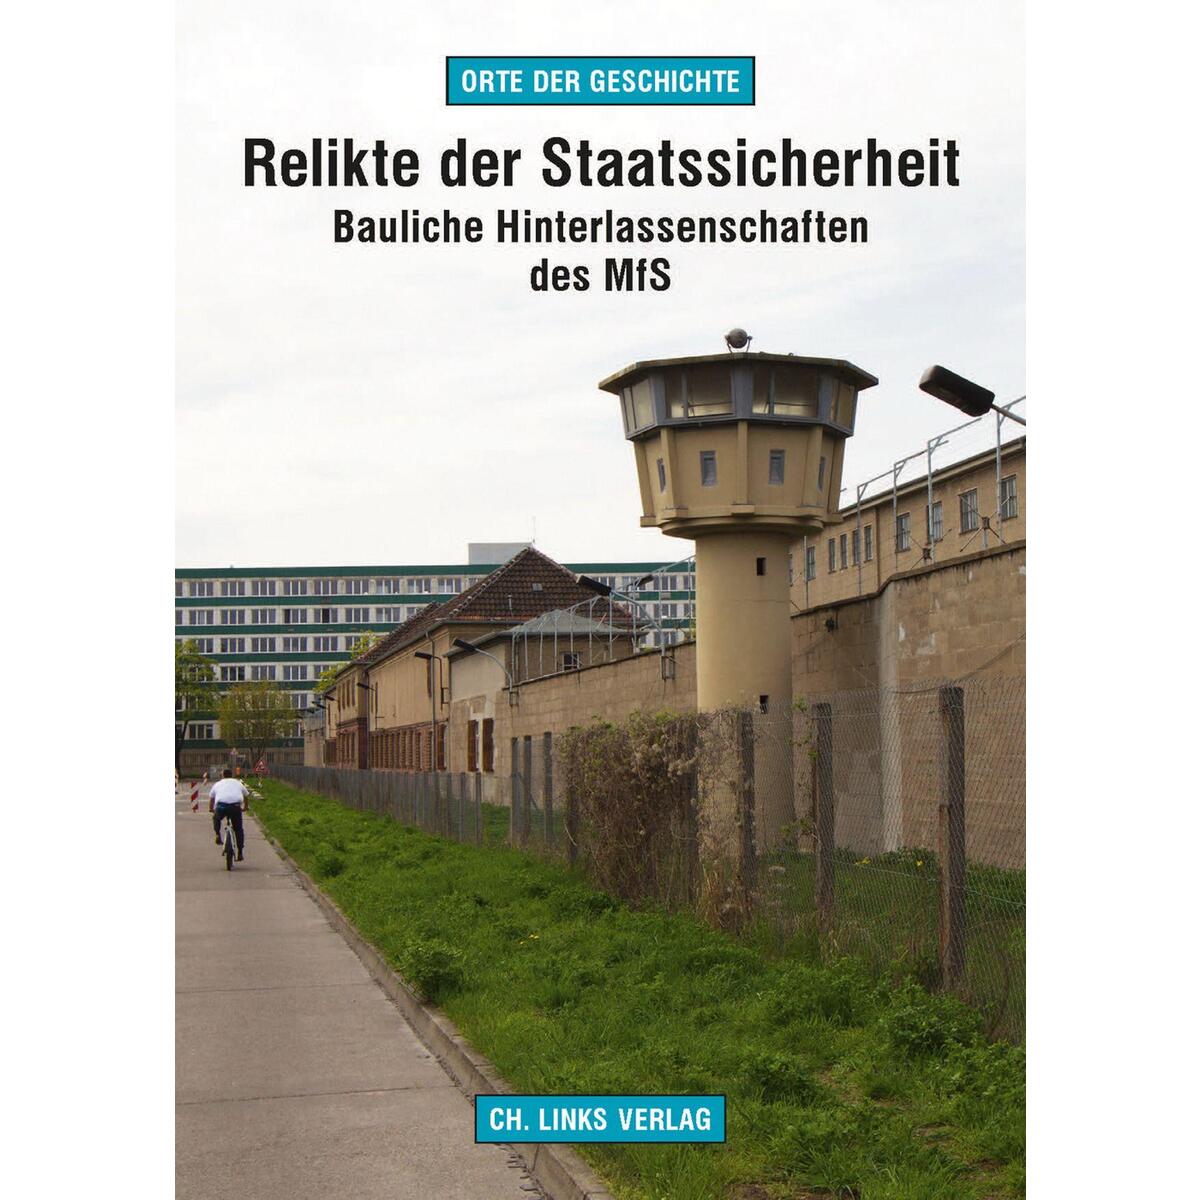 Relikte der Staatssicherheit von Christoph Links Verlag